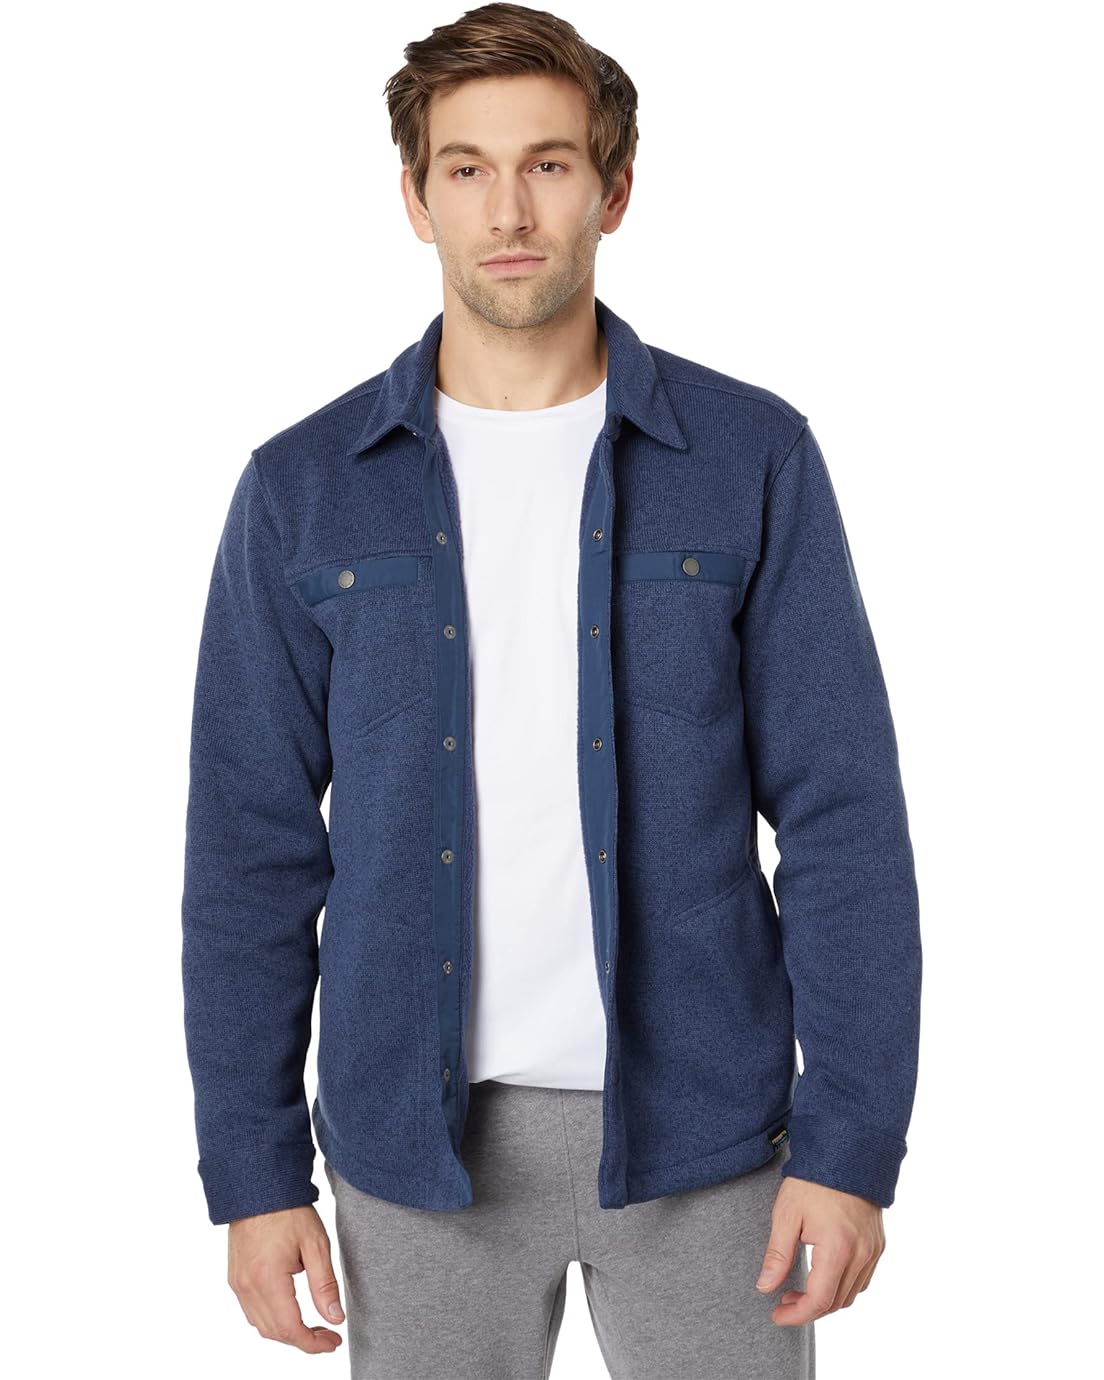 L.L.Bean Sweater Fleece Shirt Jac Regular